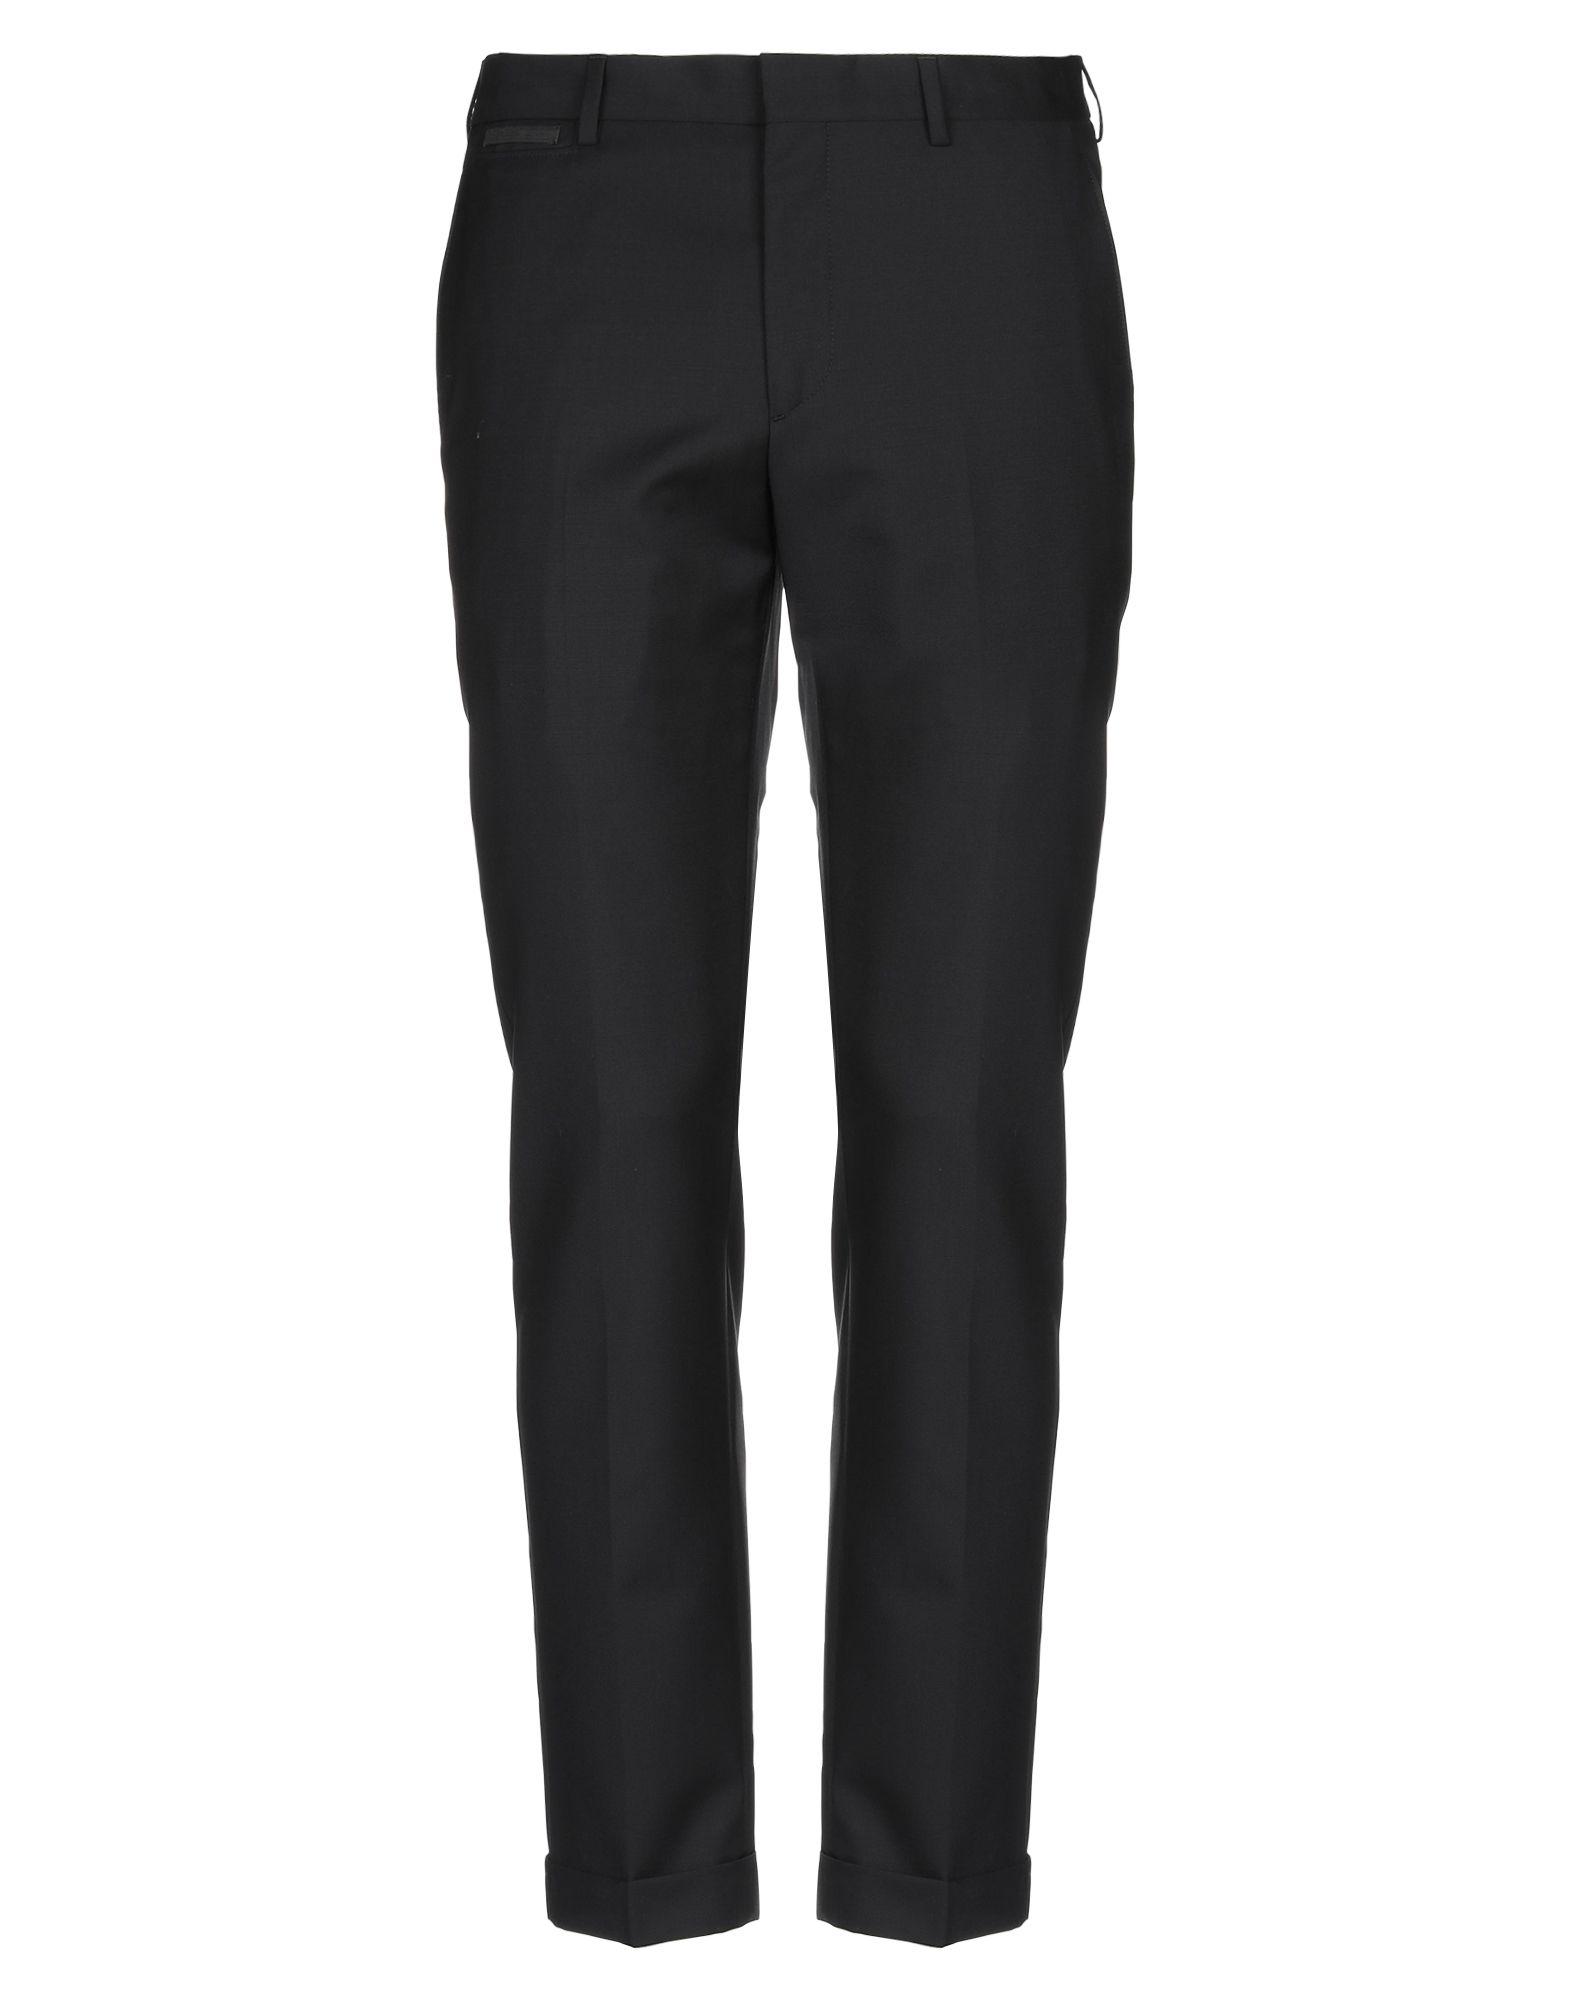 Prada Casual Pants in Black for Men - Lyst